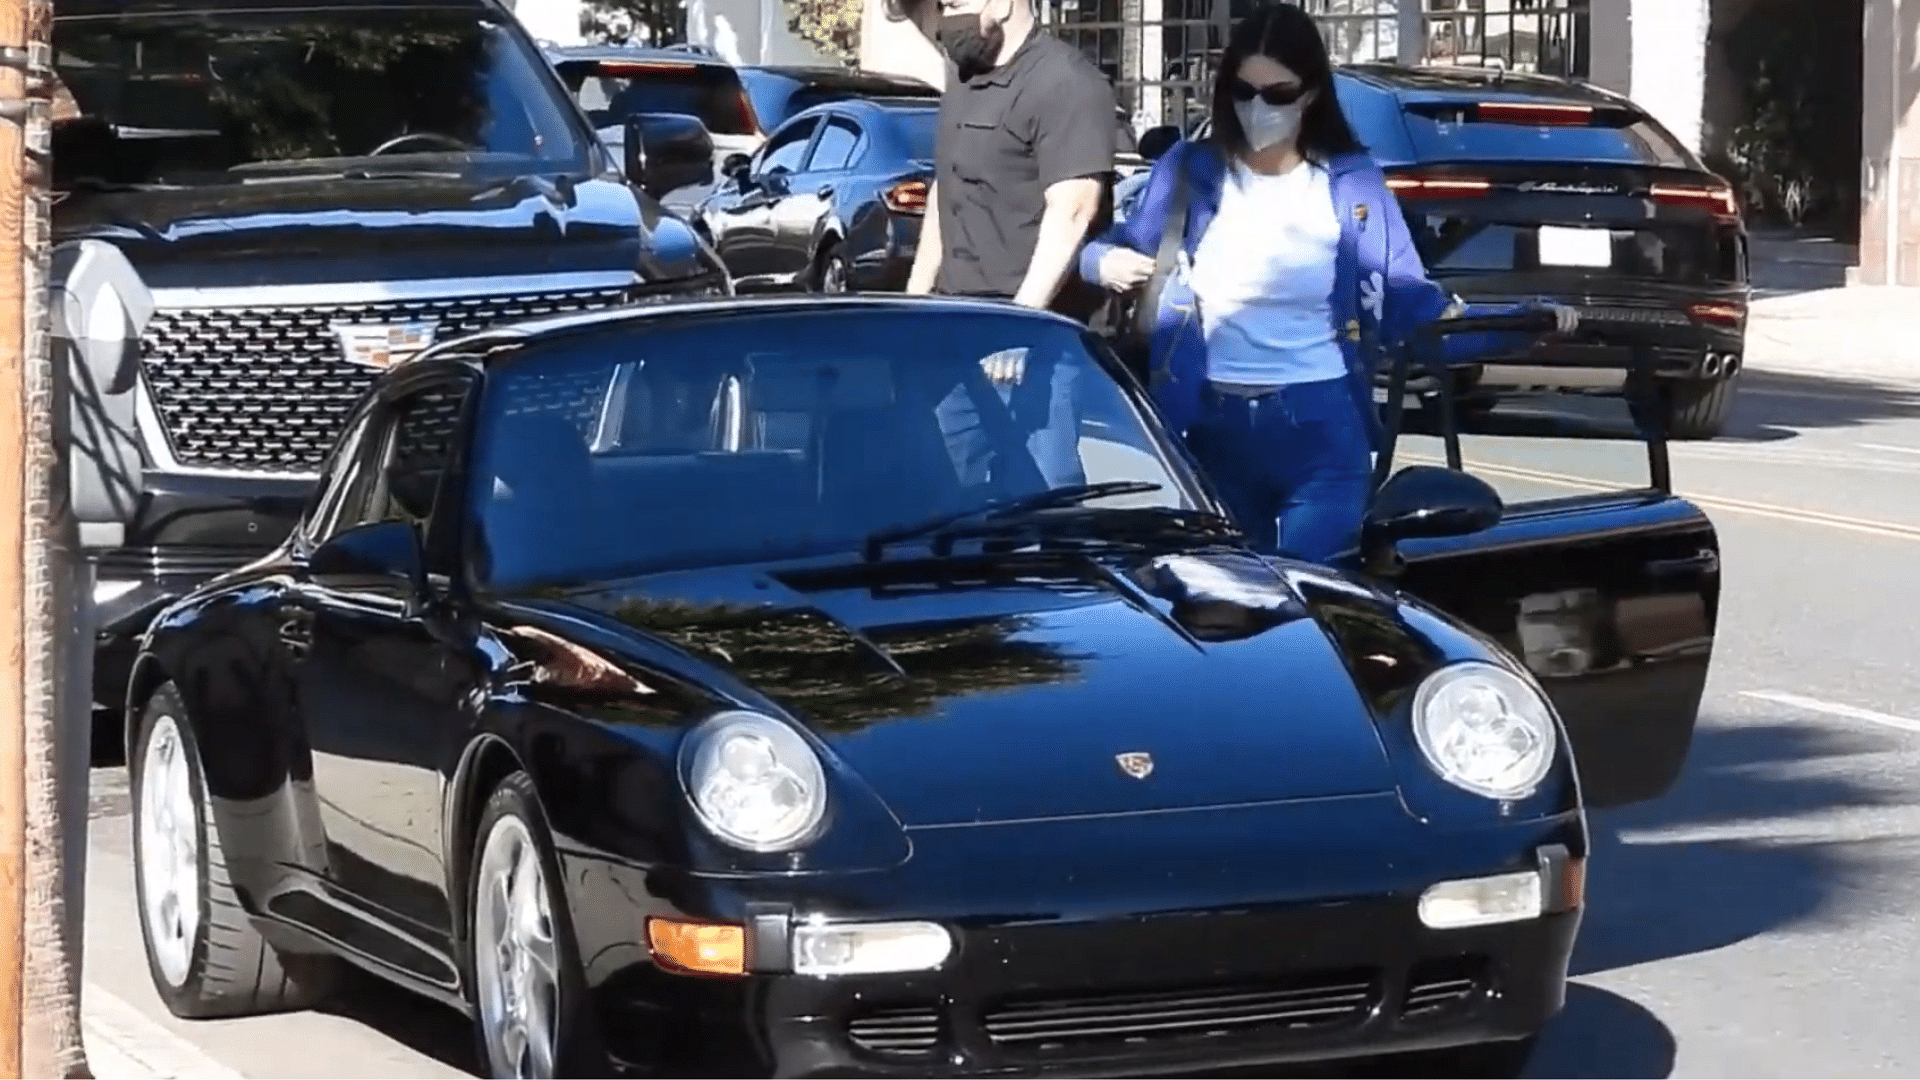 Kendal Jenner's Porsche 993